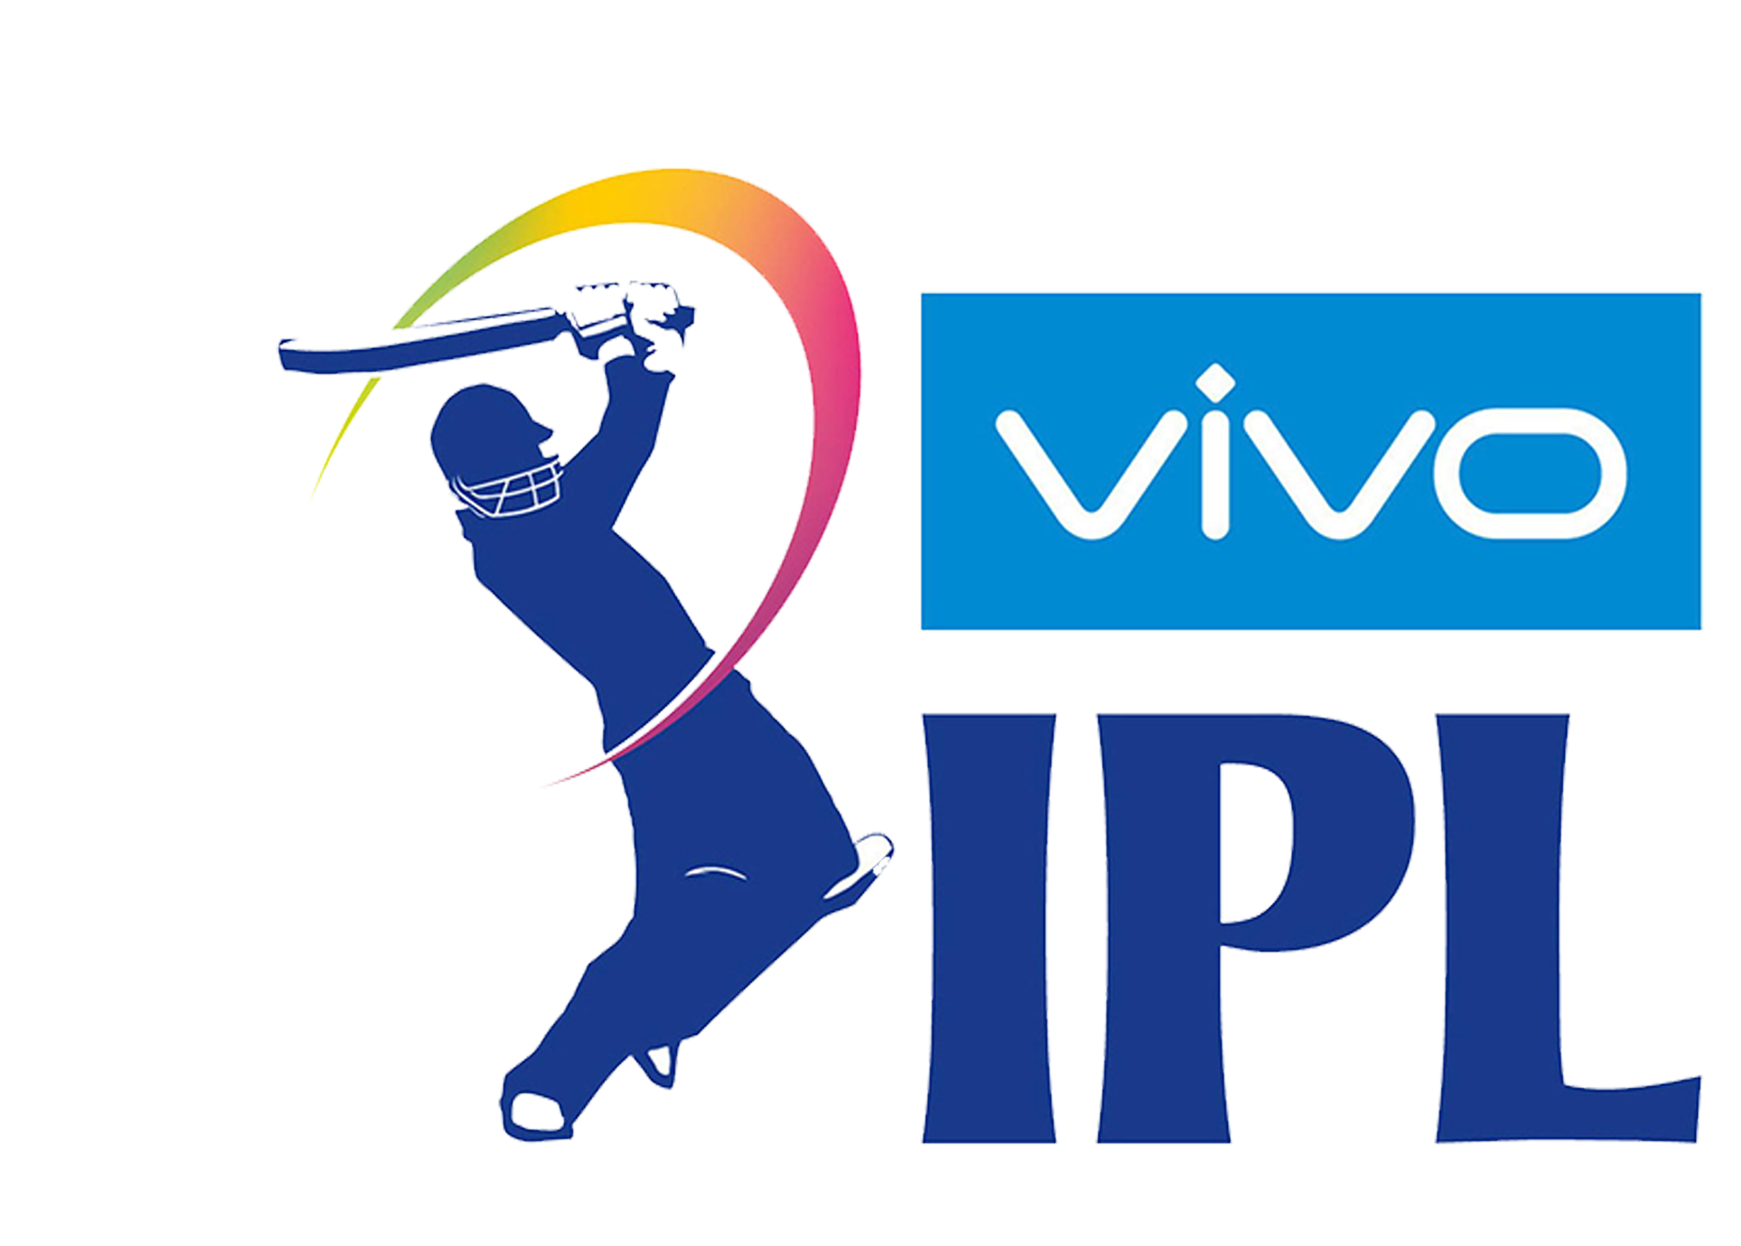 VIVO ipl logo